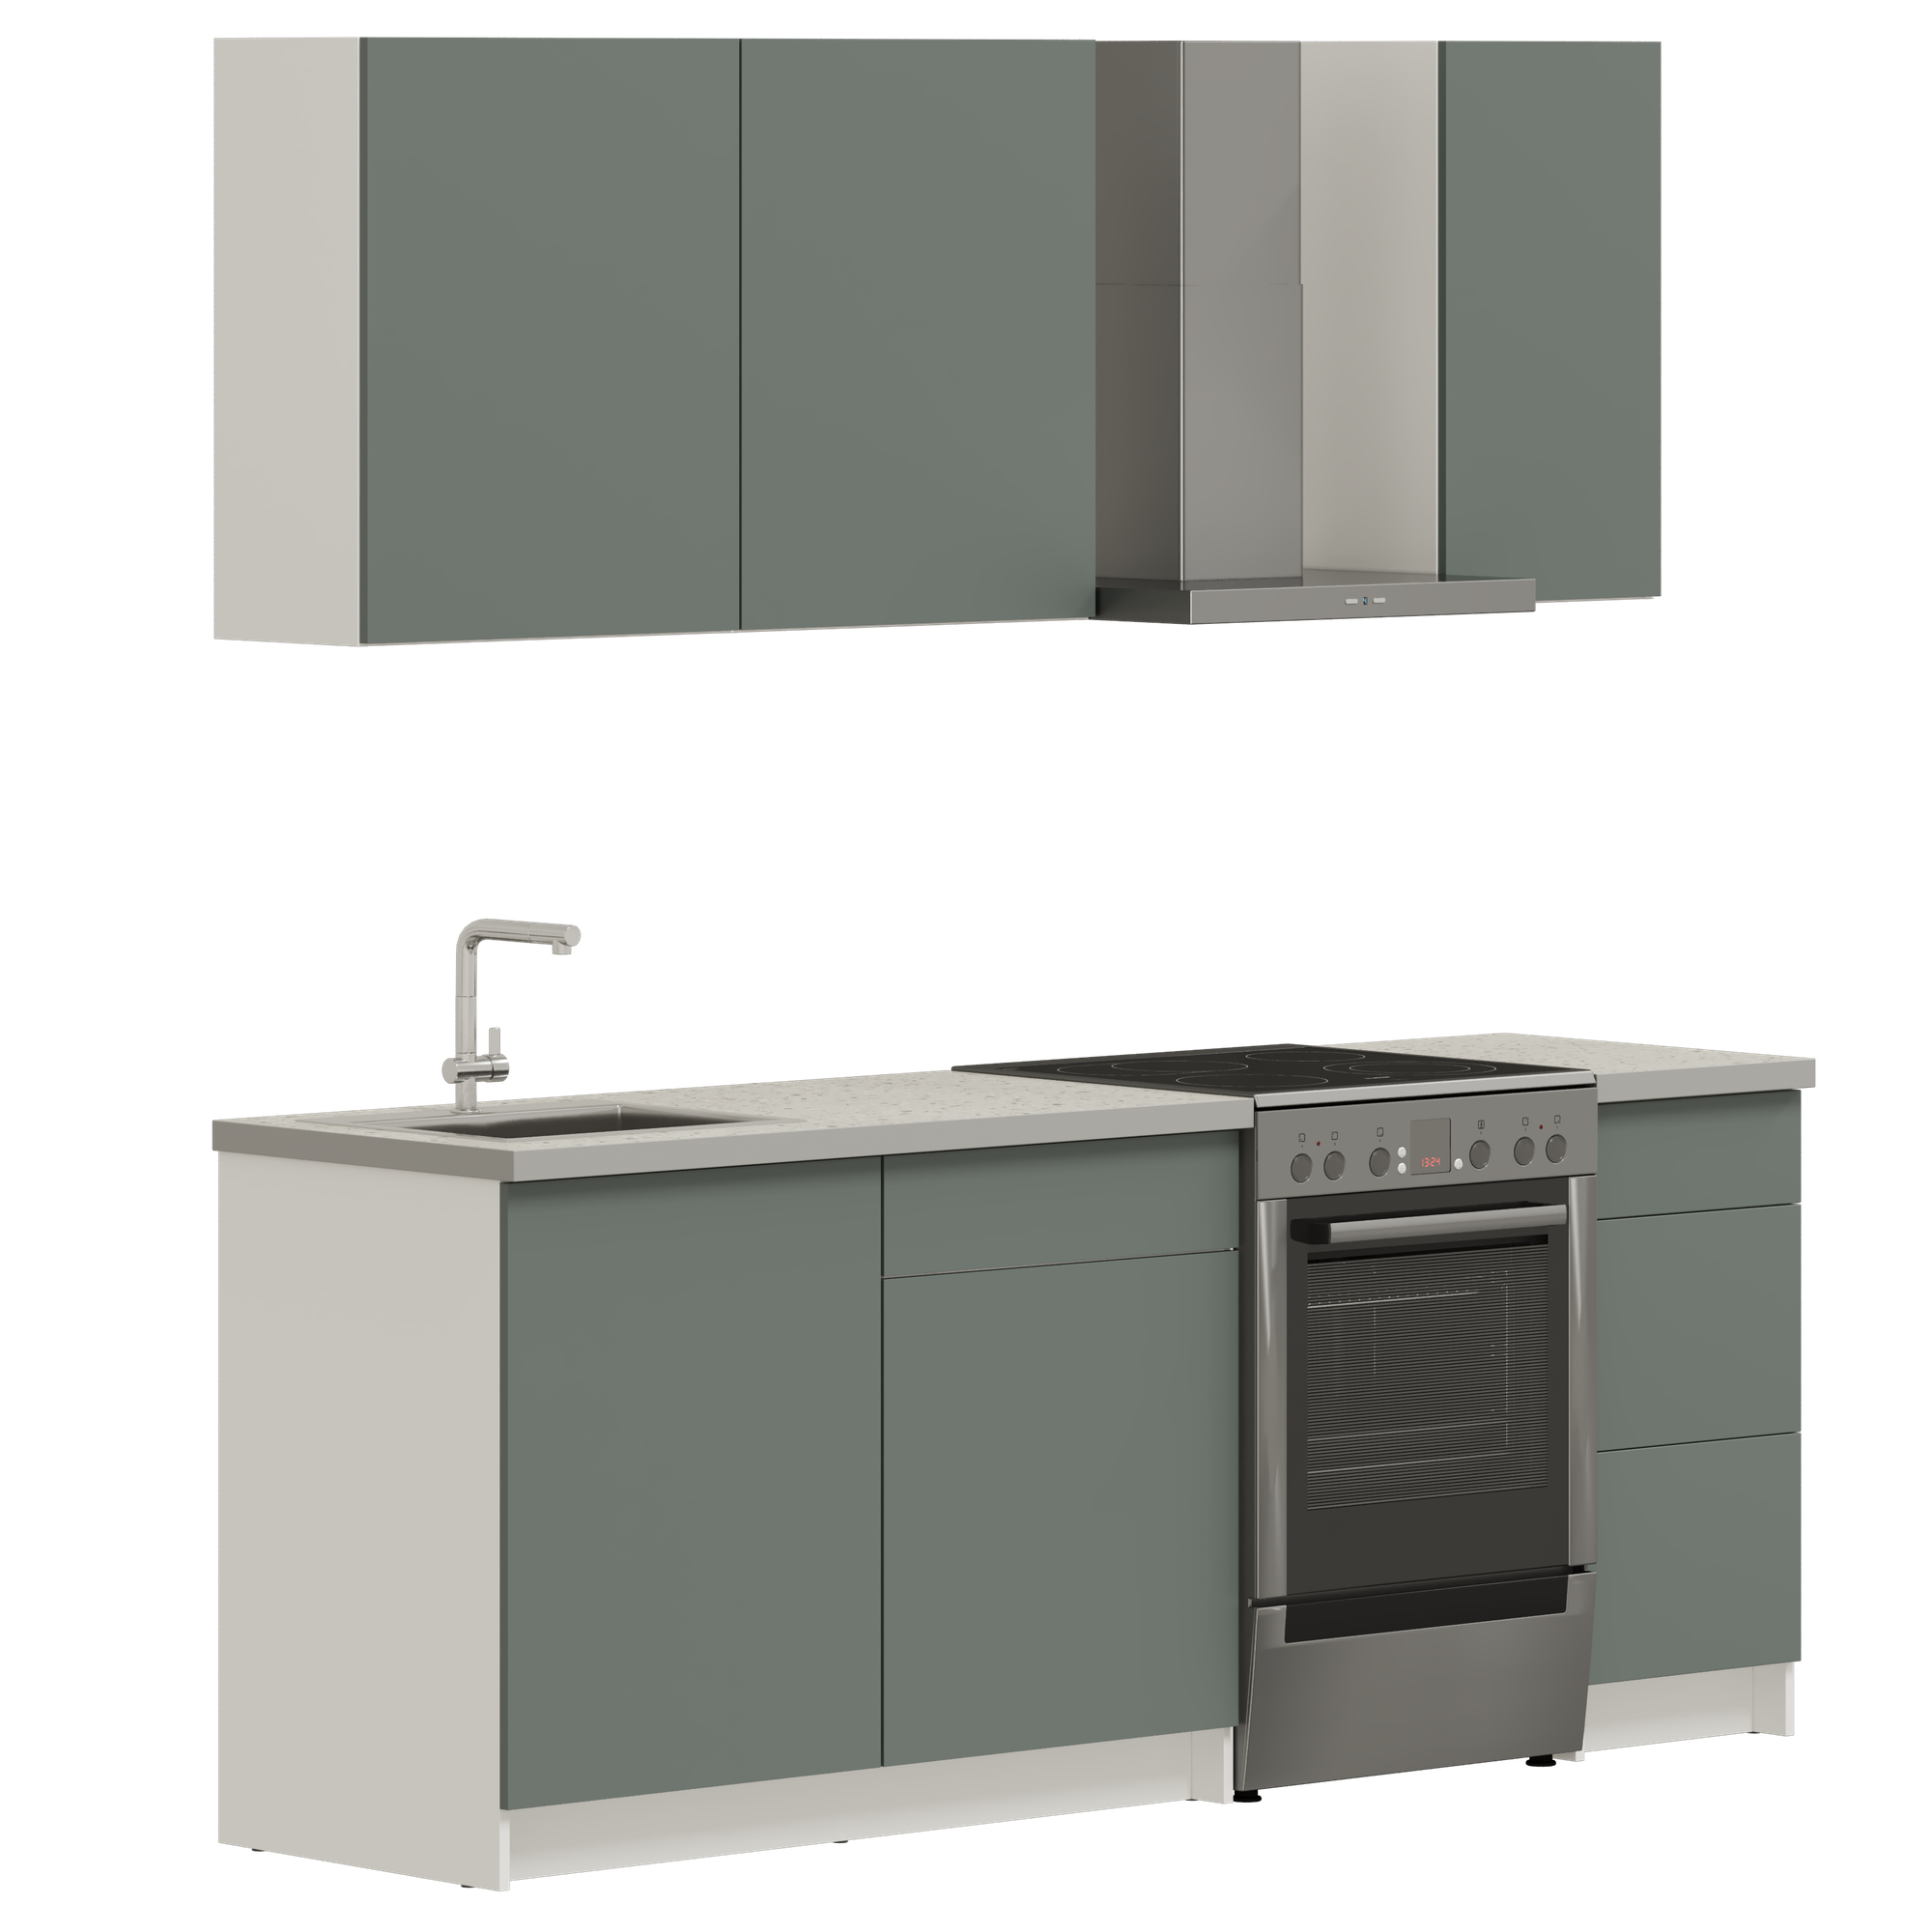 Кухонный гарнитур, кухня прямая Pragma Elinda 162 см (1,62 м), со столешницей, ЛДСП, дымчатый зеленый